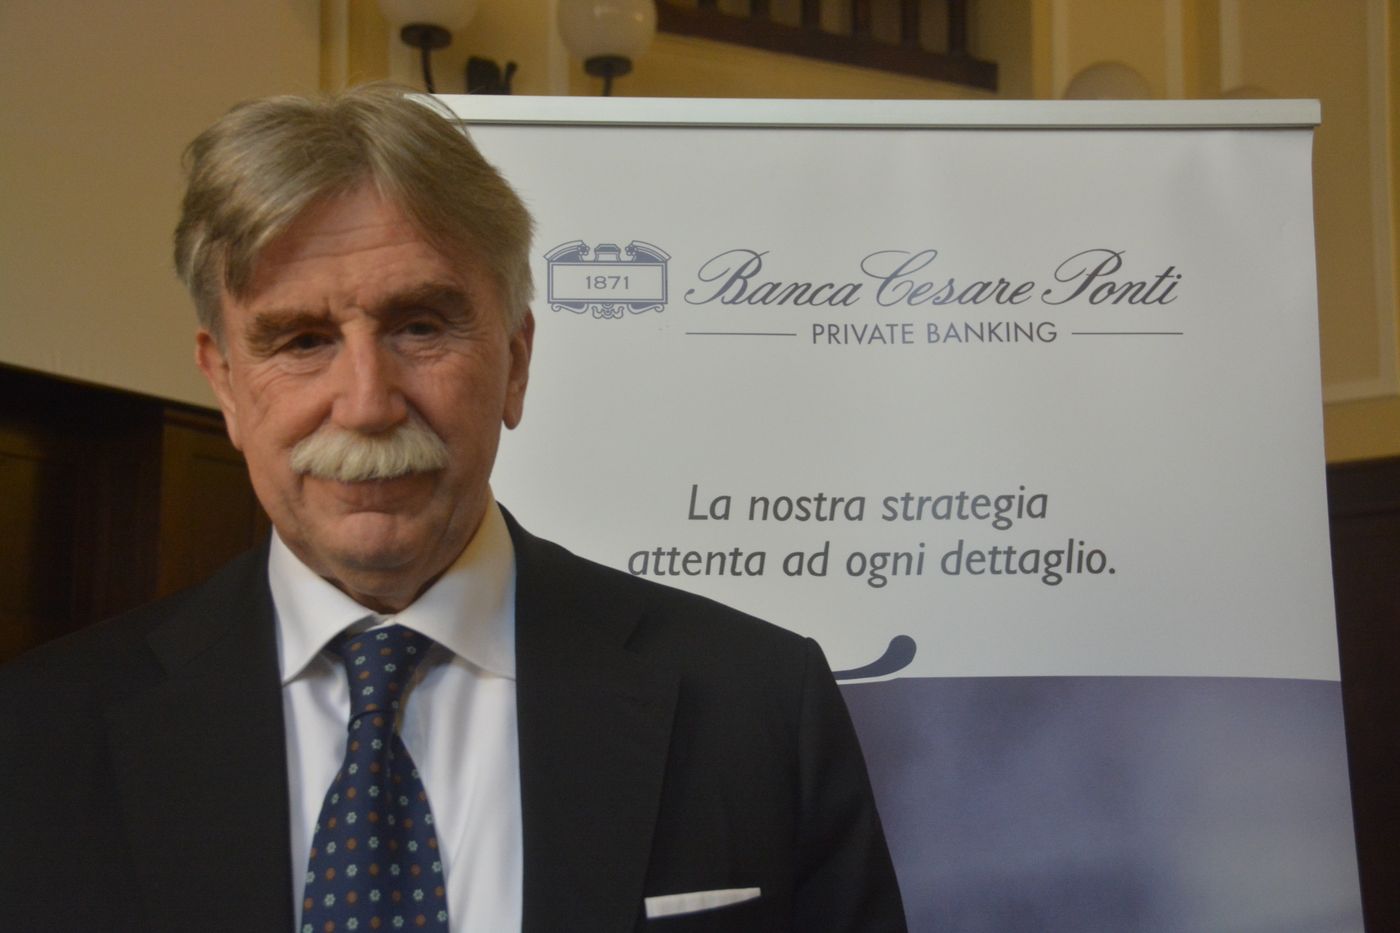 Banca Cesare Ponti Imperia aprile 2019 Maurizio Zancanaro